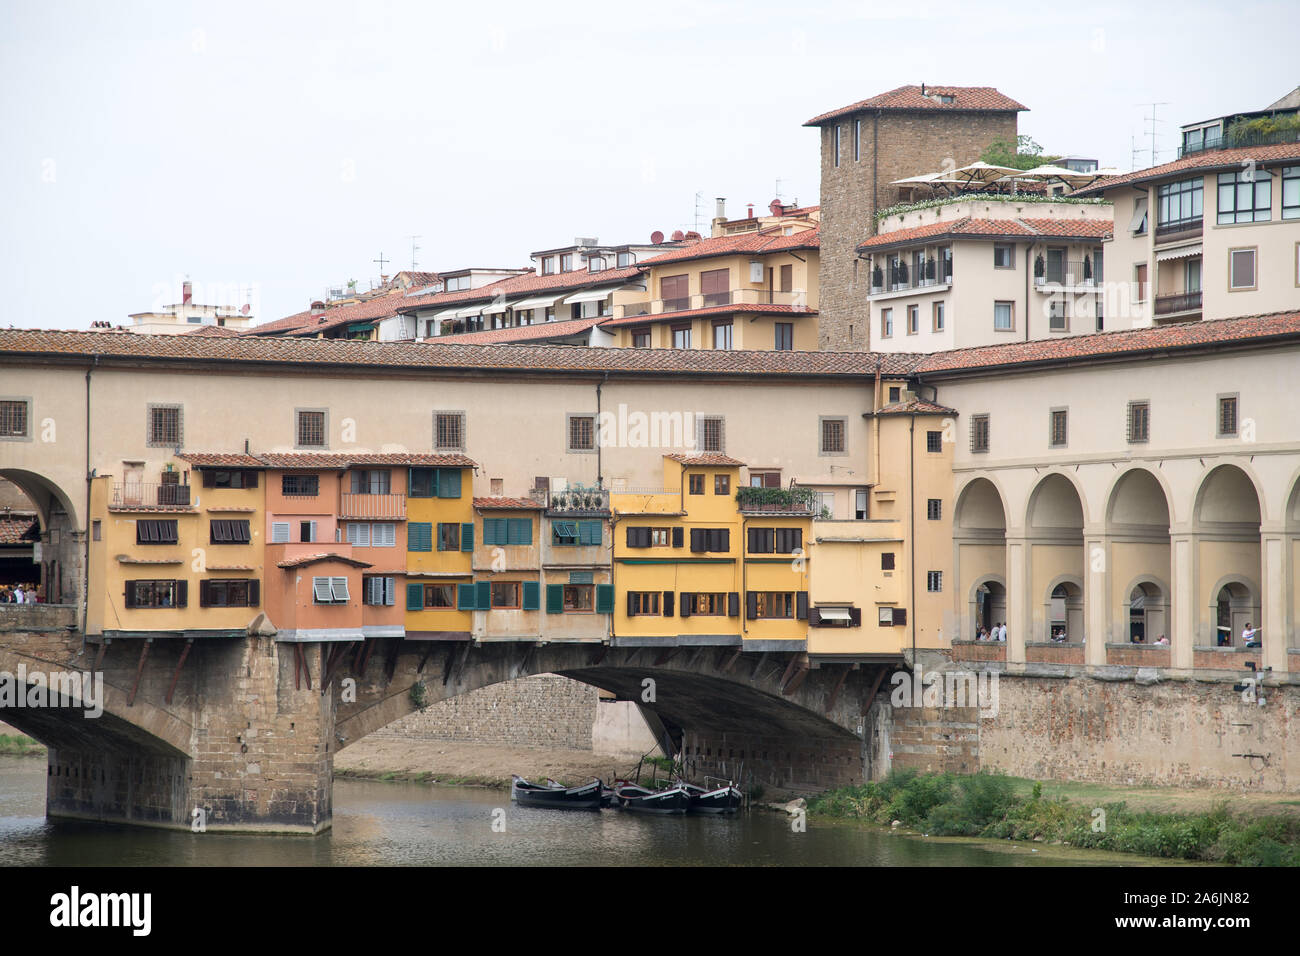 Ponte Vecchio (Old Bridge) with Corridoio Vasariano (Vasari Corridor) and Torre dei Consorti in Historic Centre of Firenze listed World Heritage by UN Stock Photo